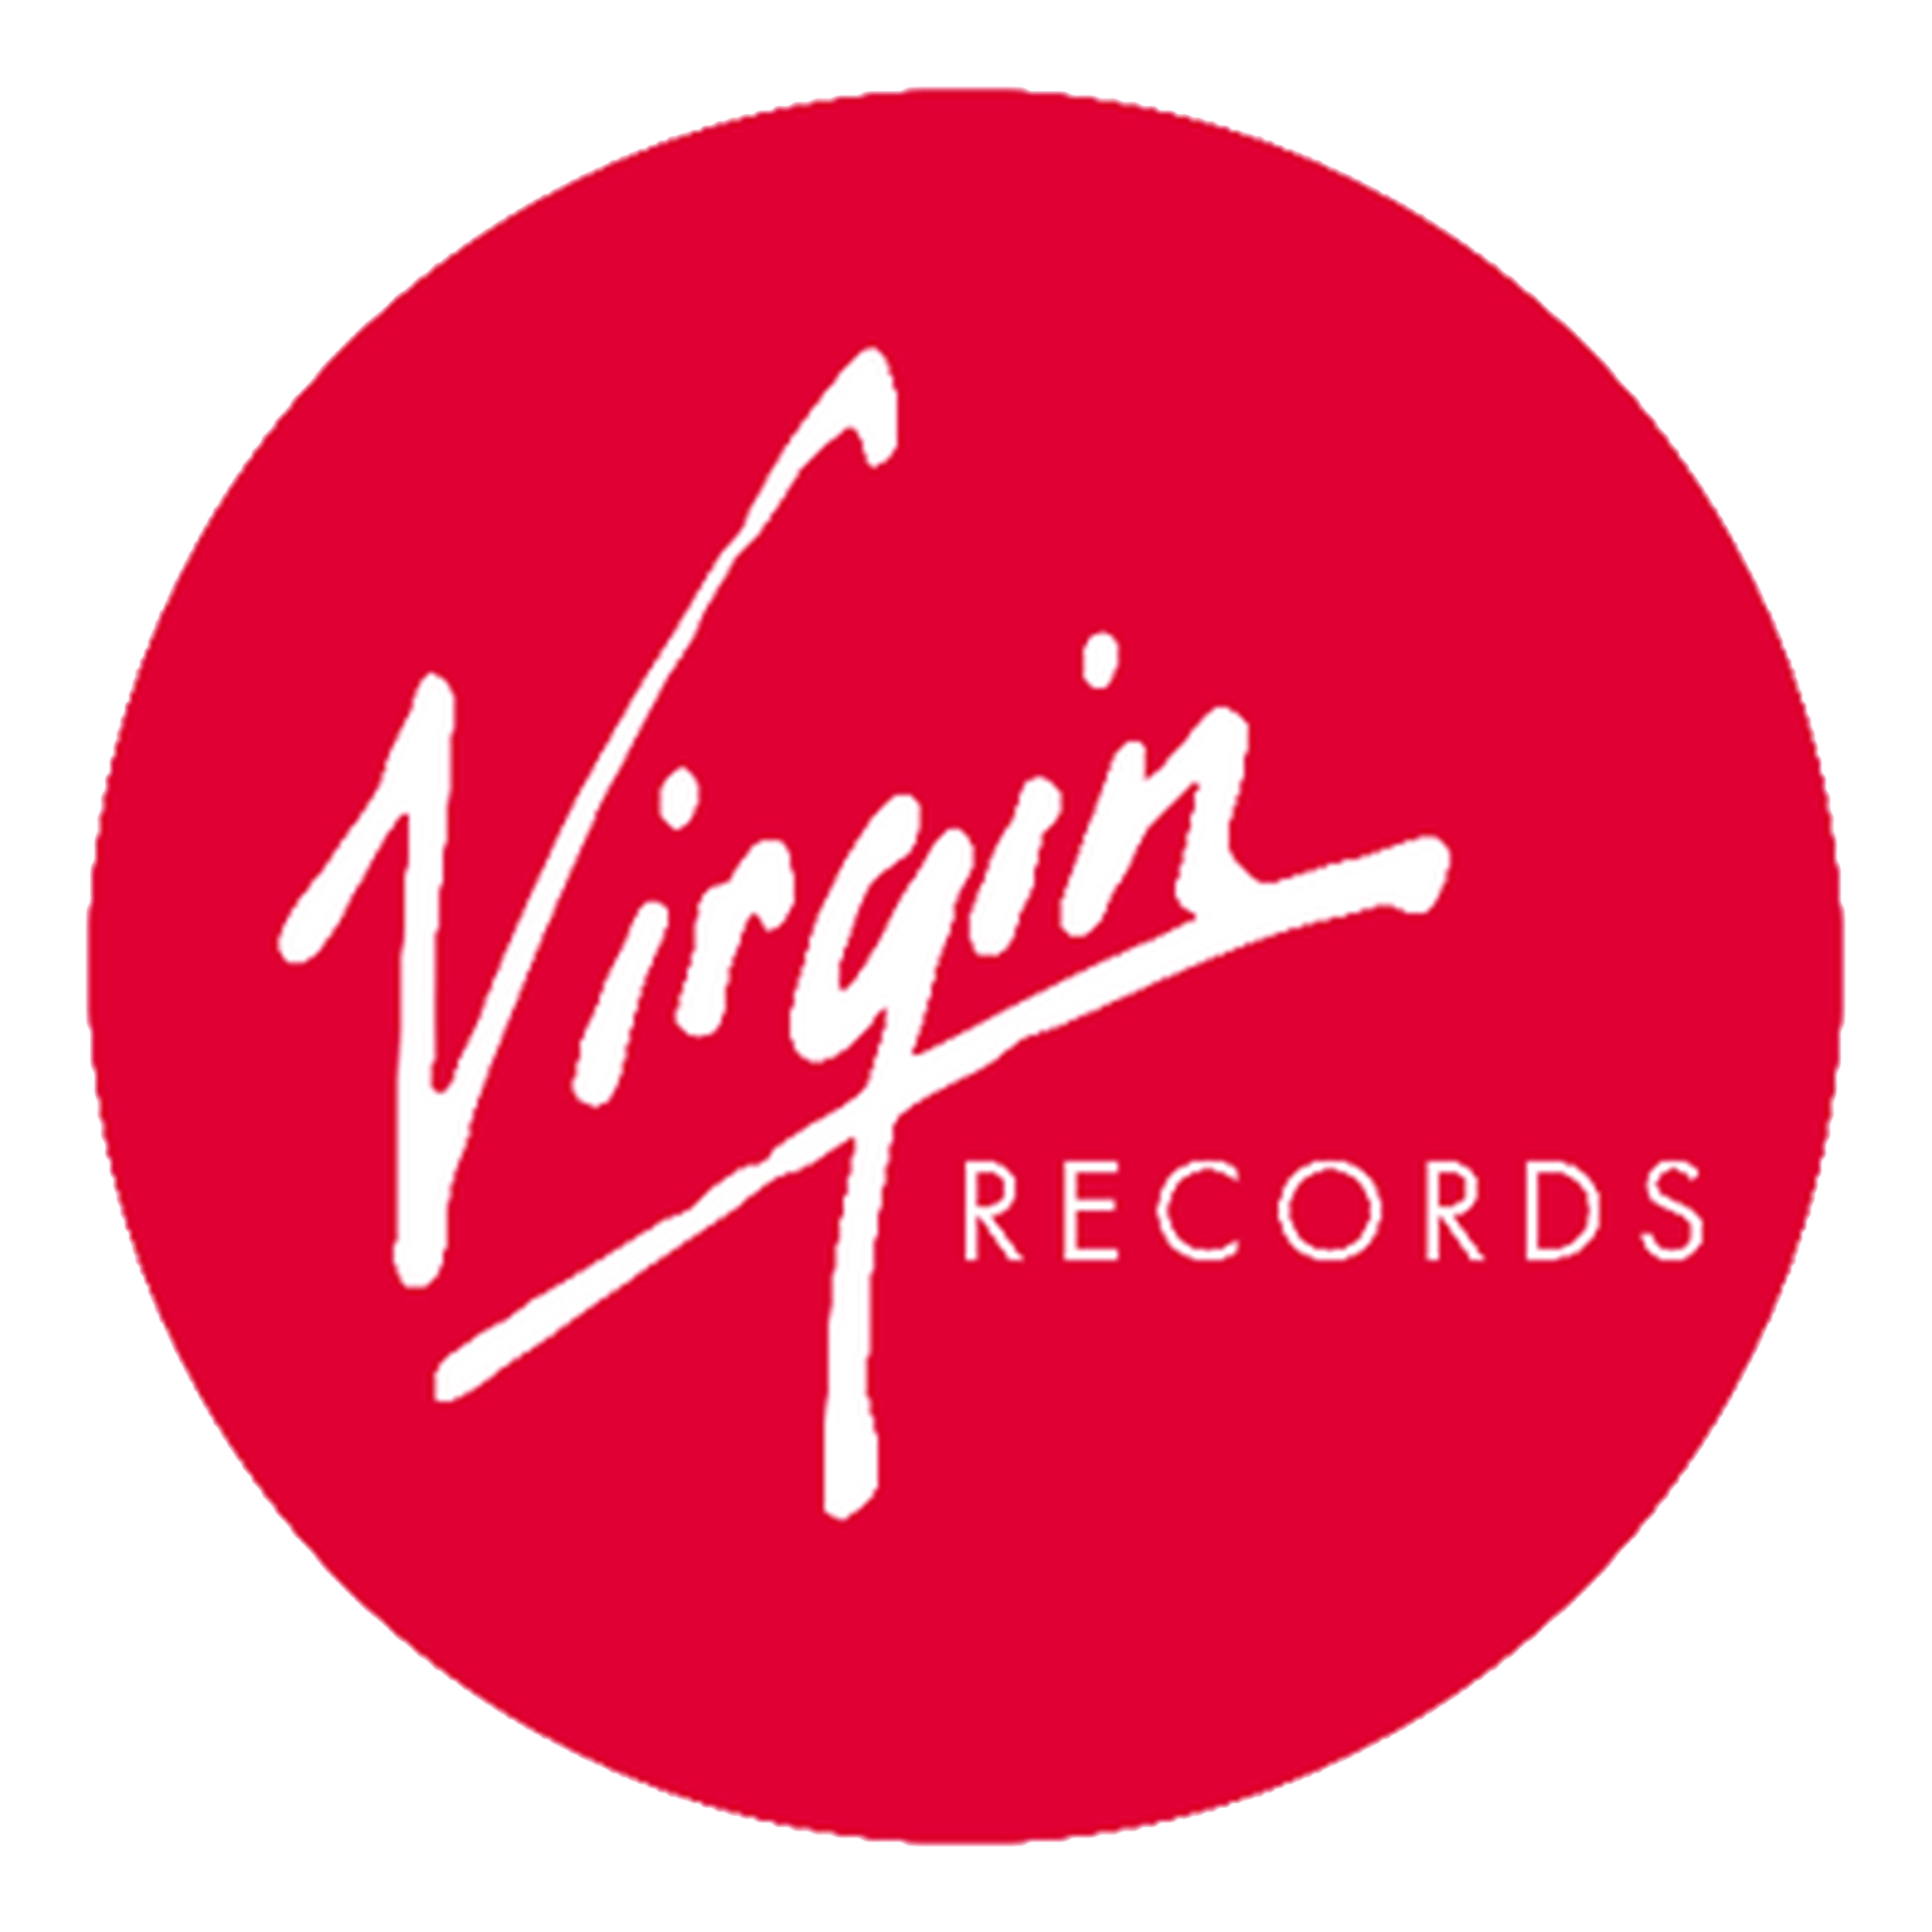 Логотип Virgin. Virgin records лейбл. Звукозаписывающие лейблы. Эмблемы музыкальных лейблов. Выпускающий лейбл